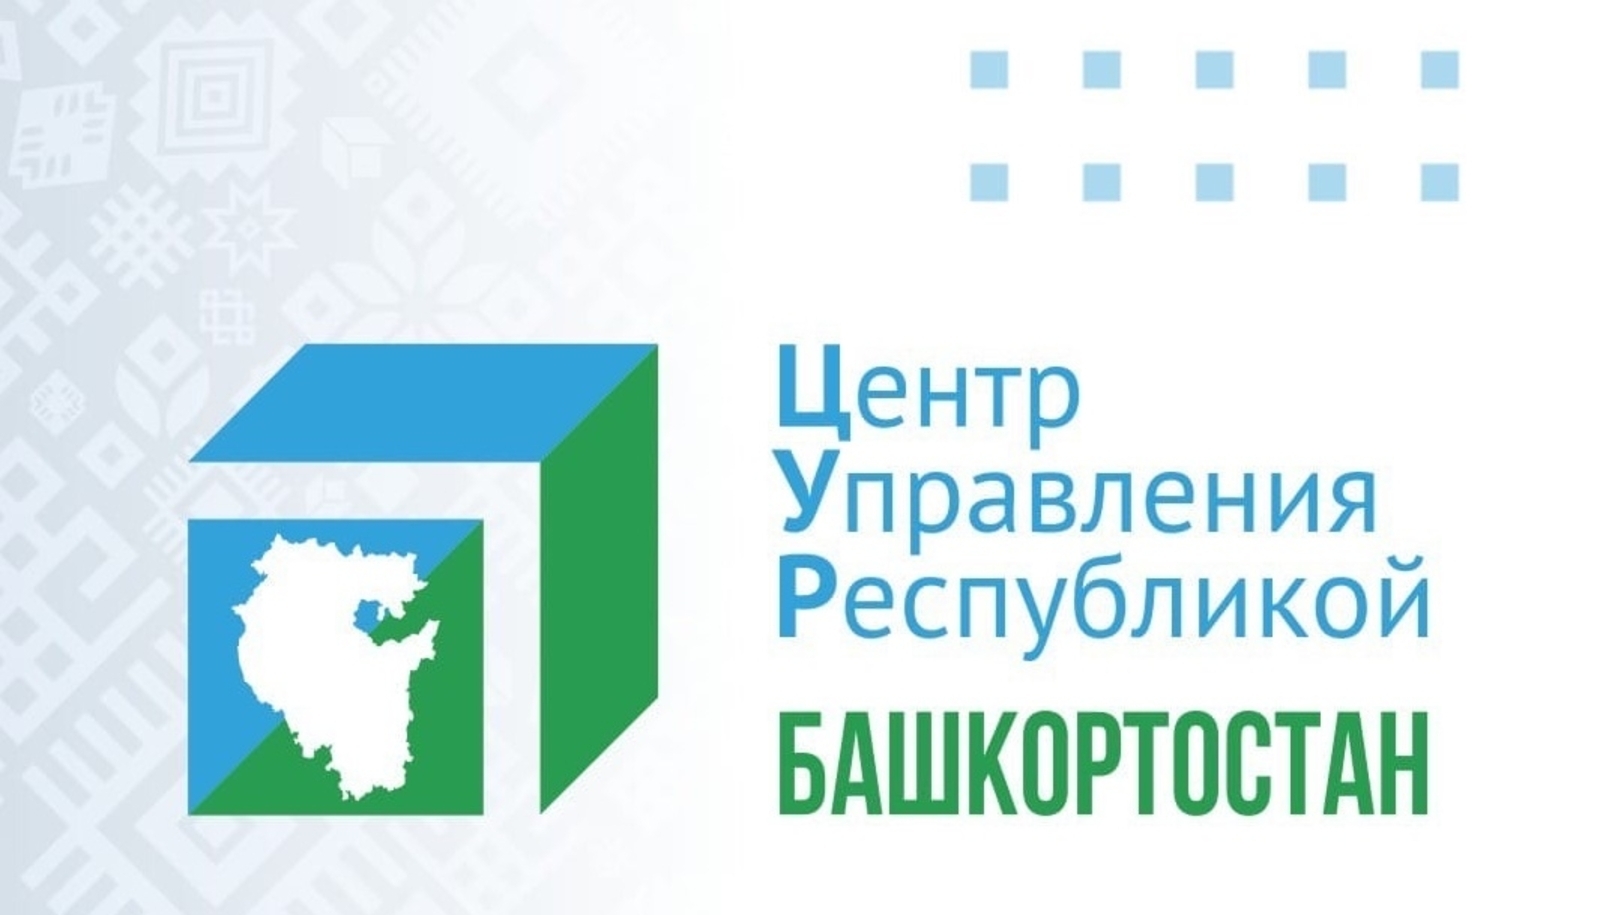 За 2021-2022 гг. информсистемы ЦУР Башкортостана зафиксировали более 500 000 обращений